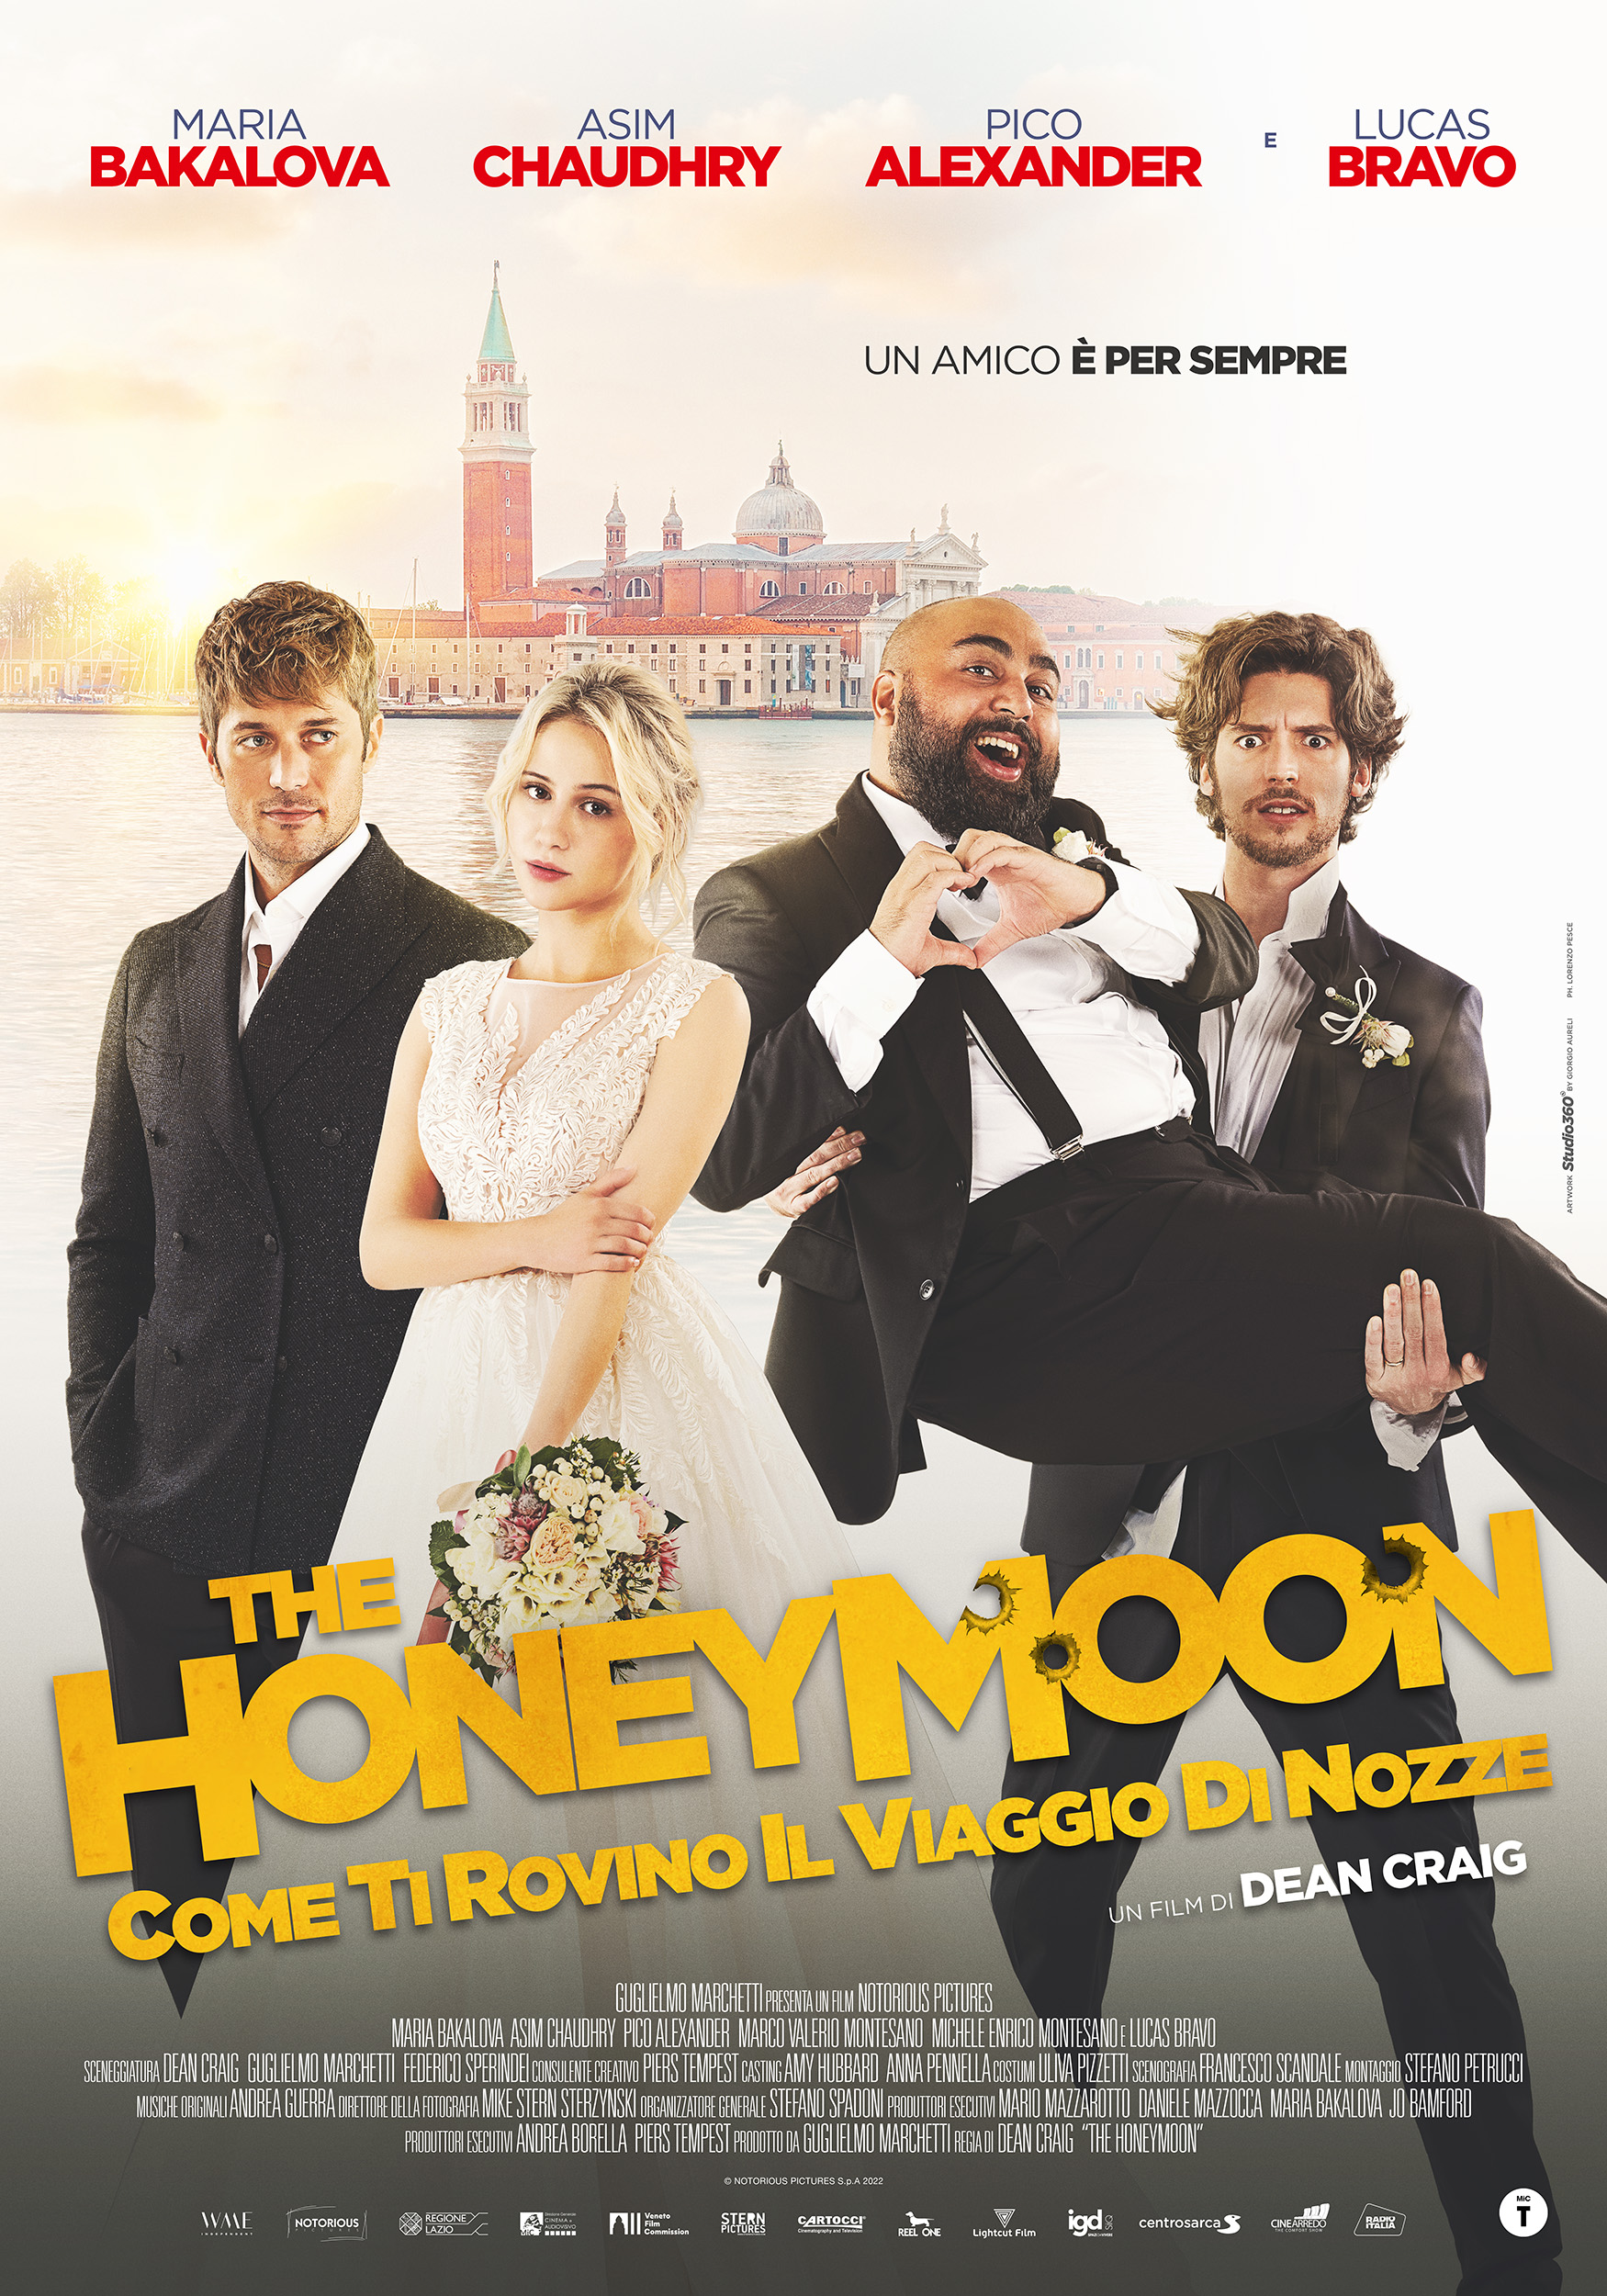 "The Honeymoon Come ti rovino il viaggio di nozze", dal 16 marzo al cinema con NotoriousPictures